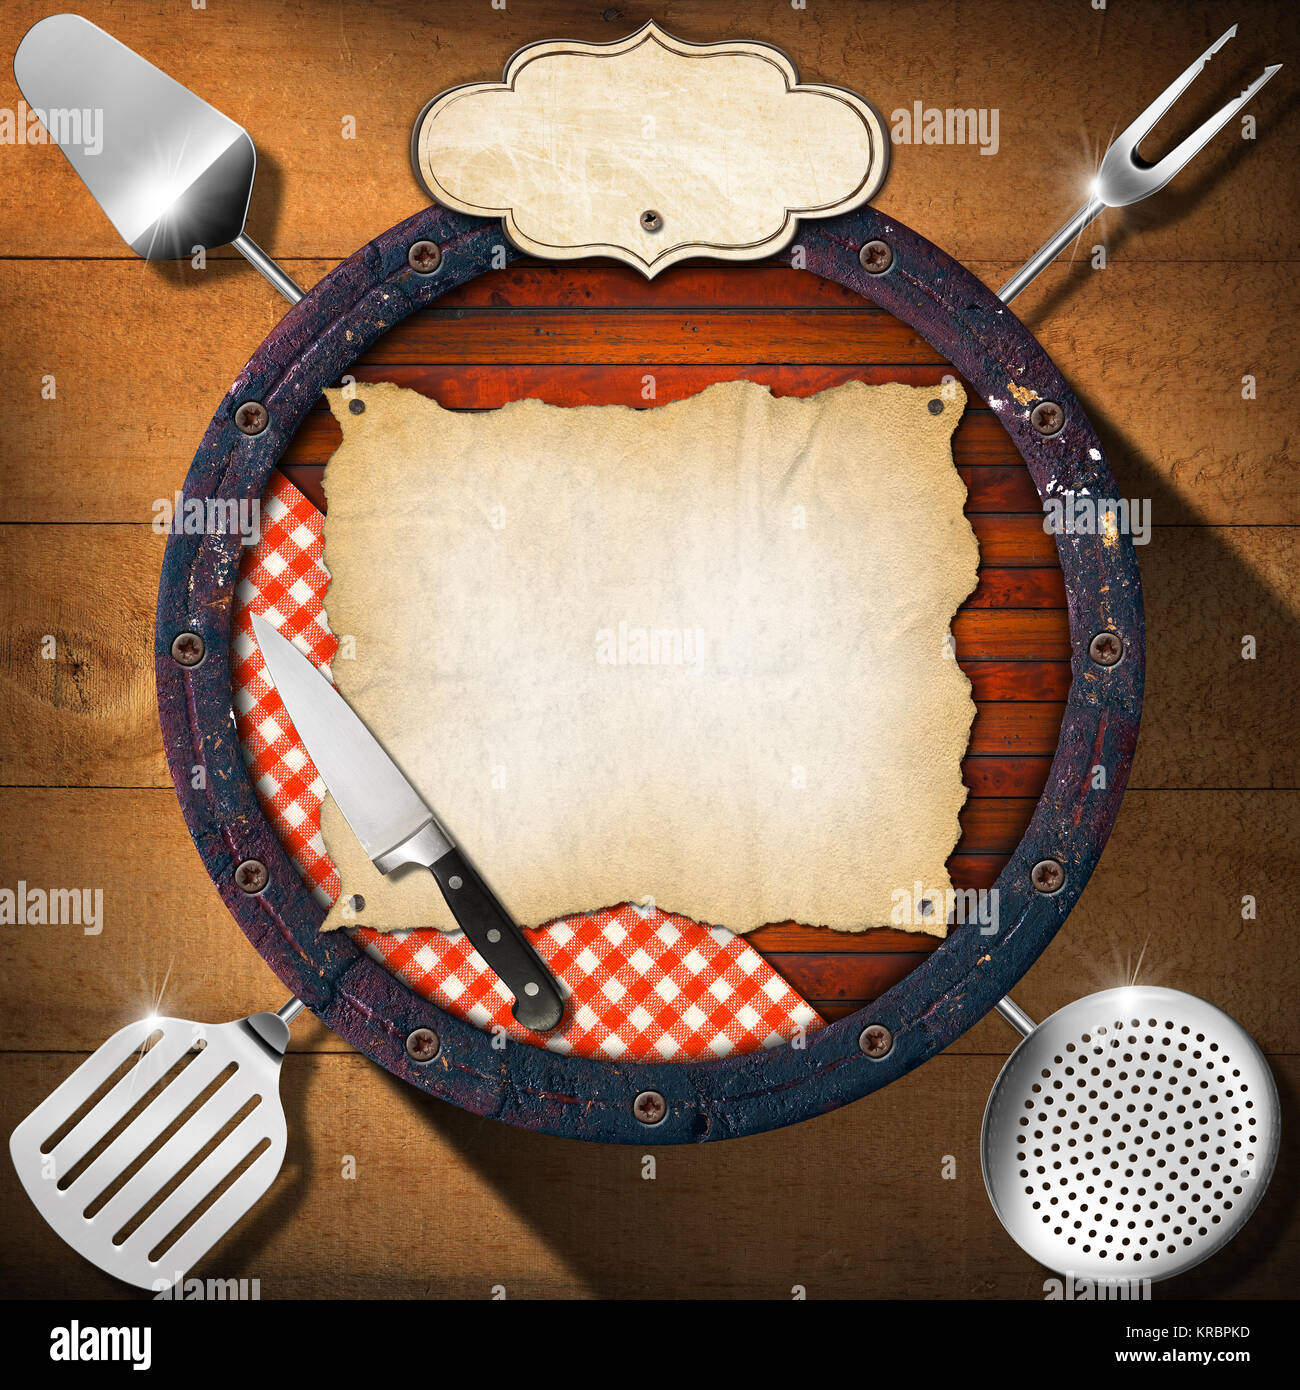 Holz- Hintergrund (Unten für ein Barrel) mit Küchengeräten, Tischdecke, leere Pergament und Label. Hintergrund für ein rustikales Menü Stockfoto